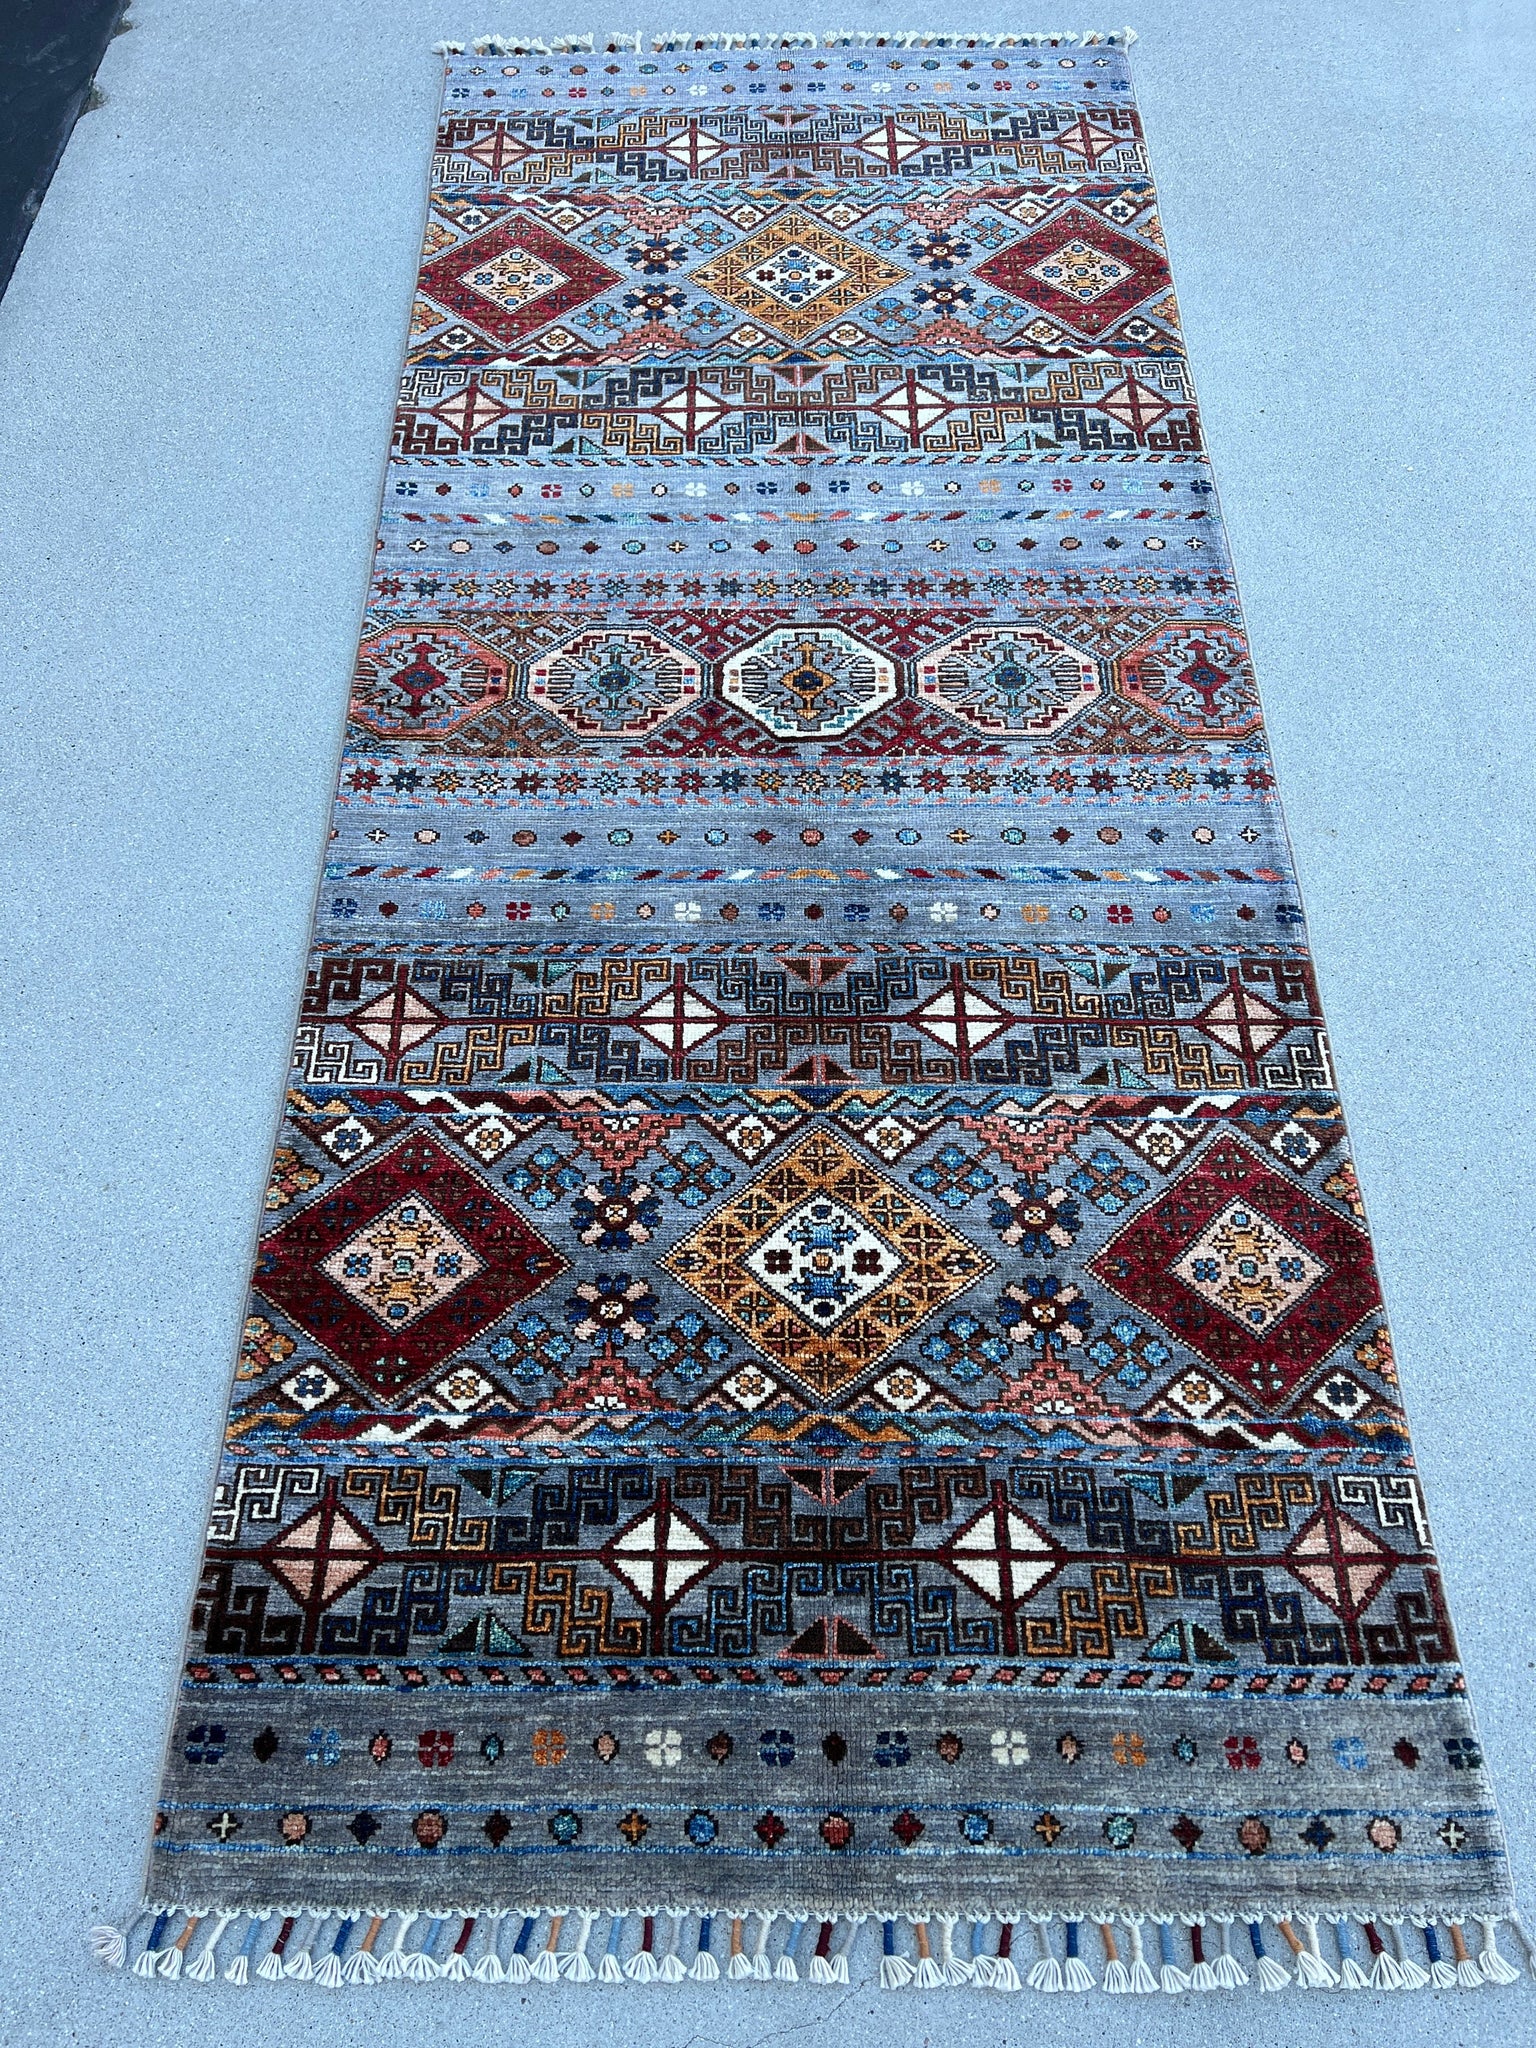 3x7 (90x215) Handmade Afghan Rug Runner | Bluish Grey Orange Red Blue Teal Brown Brown Ivory | Oriental Hand Knotted Persian Bohemian Boho